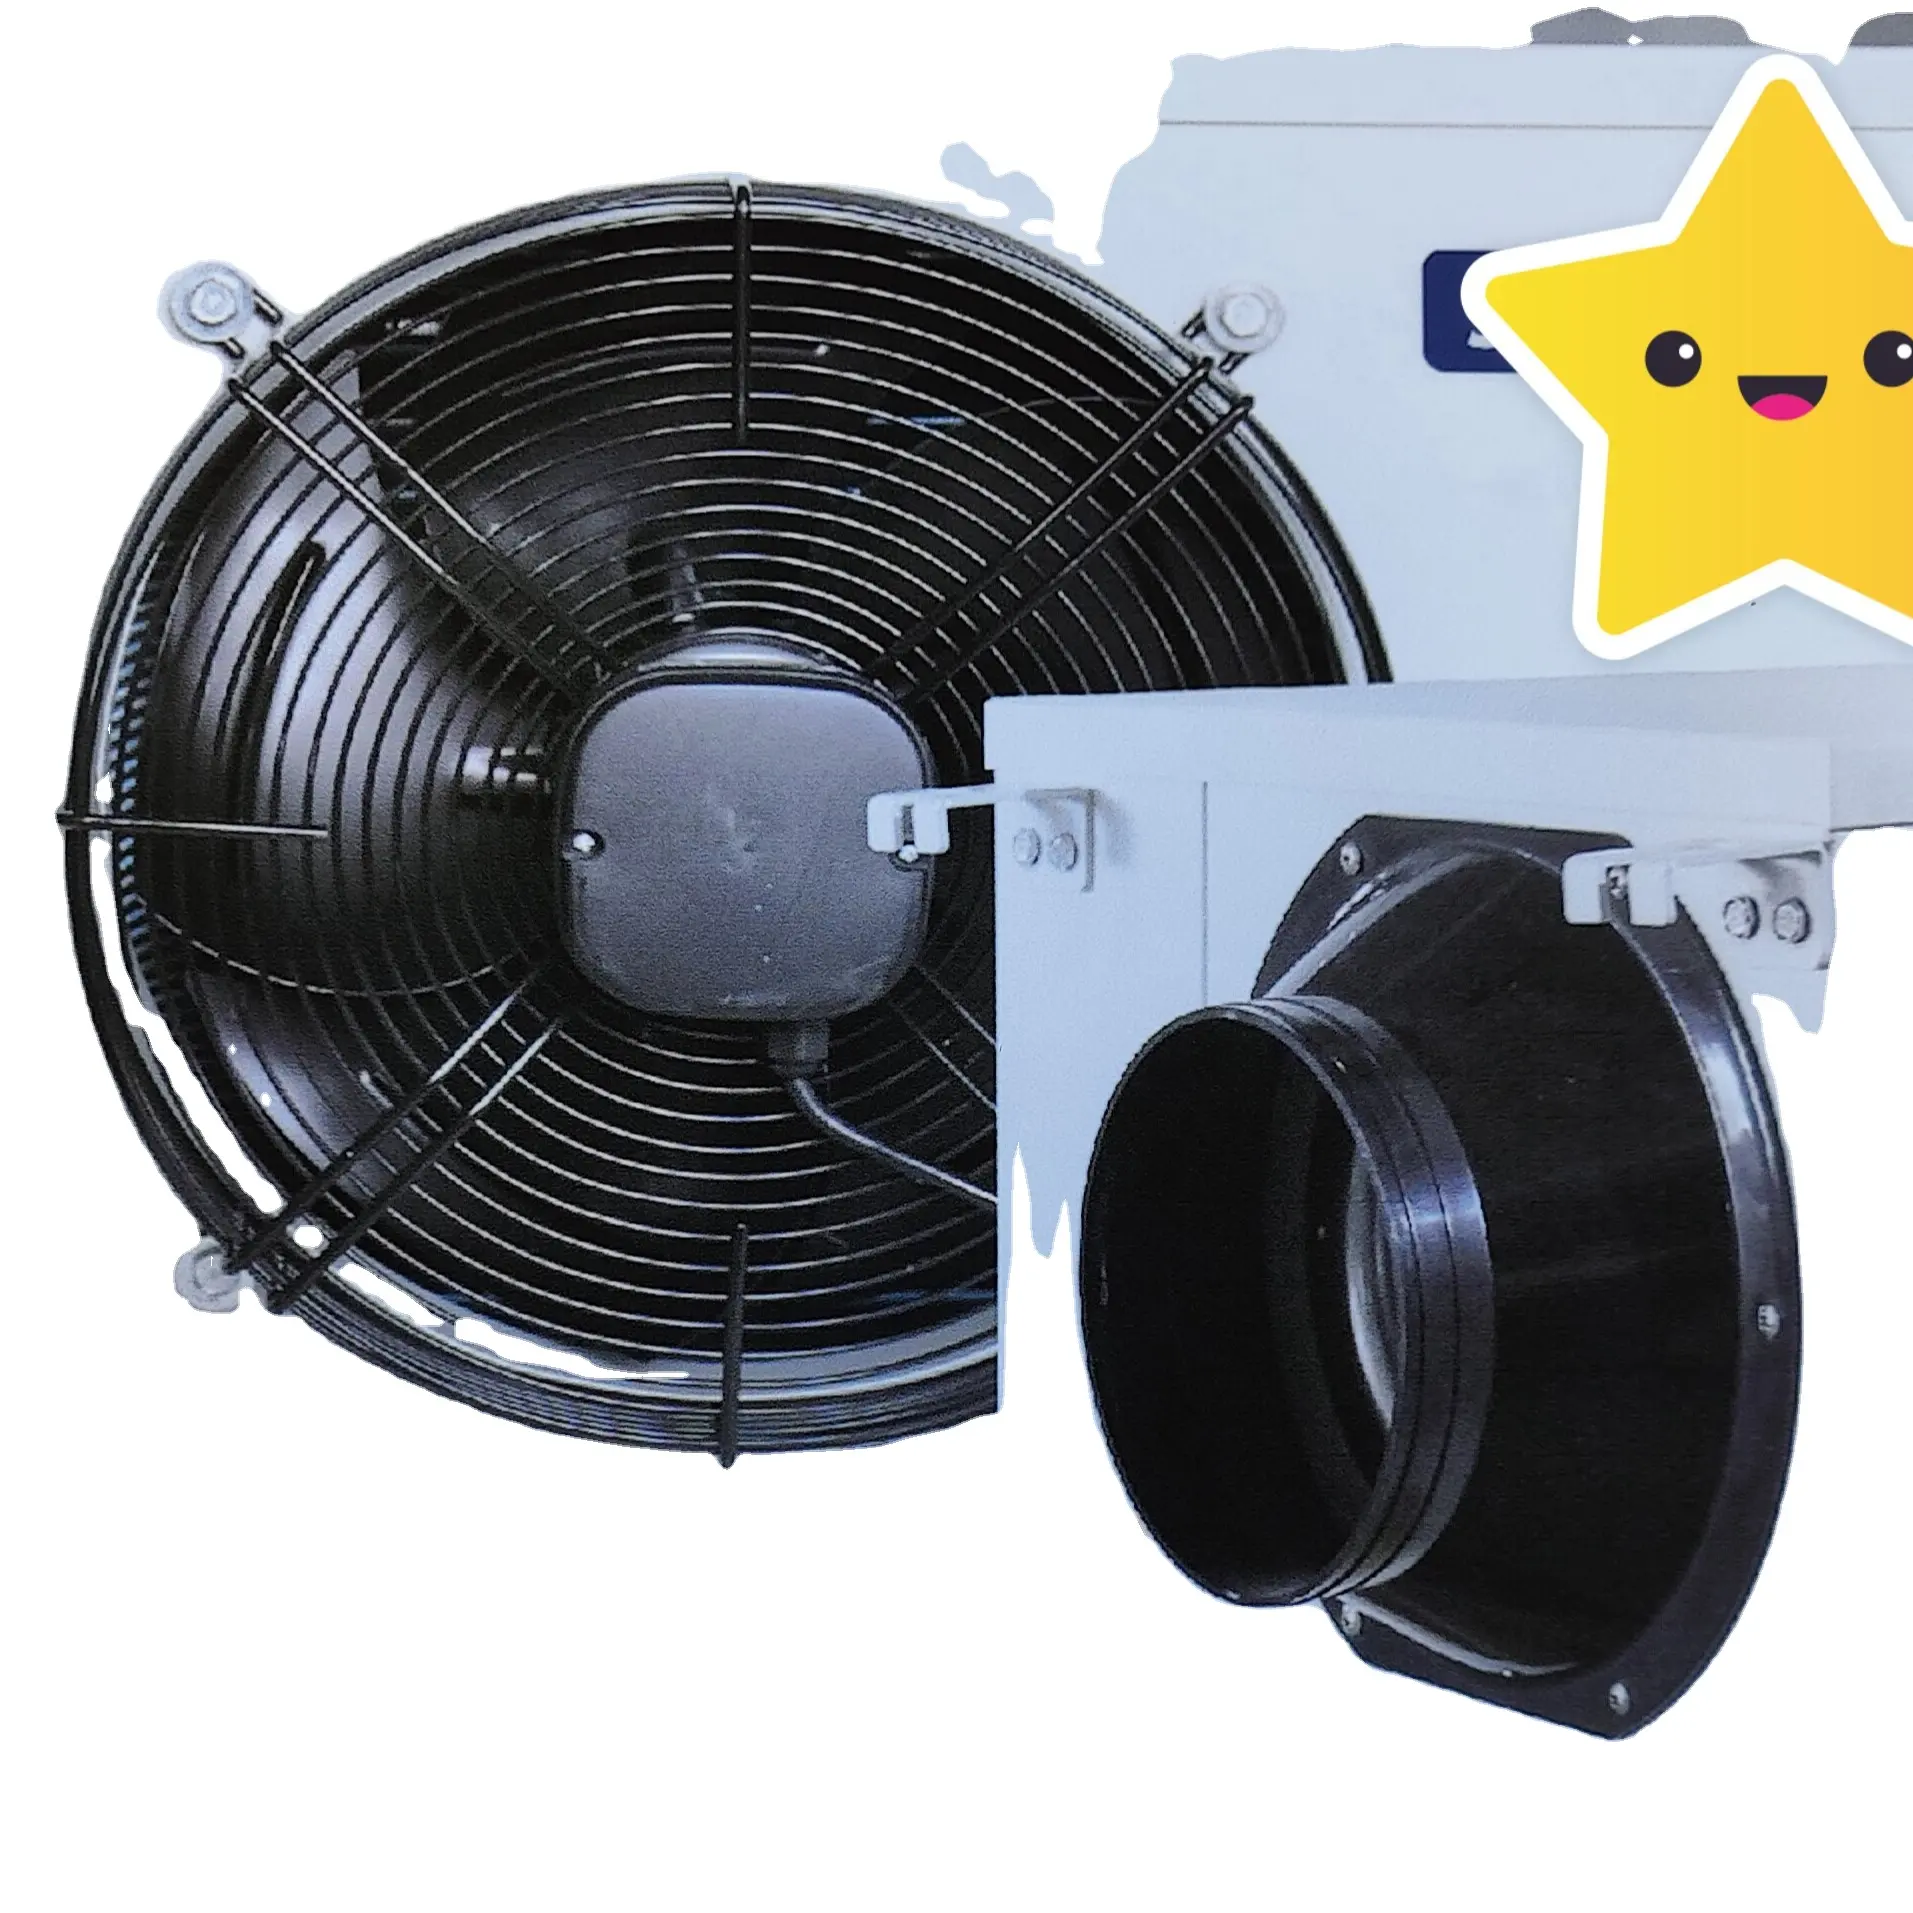 Ventilador de rotor externo de 220v, ventilador industrial, Ventilación de suelo